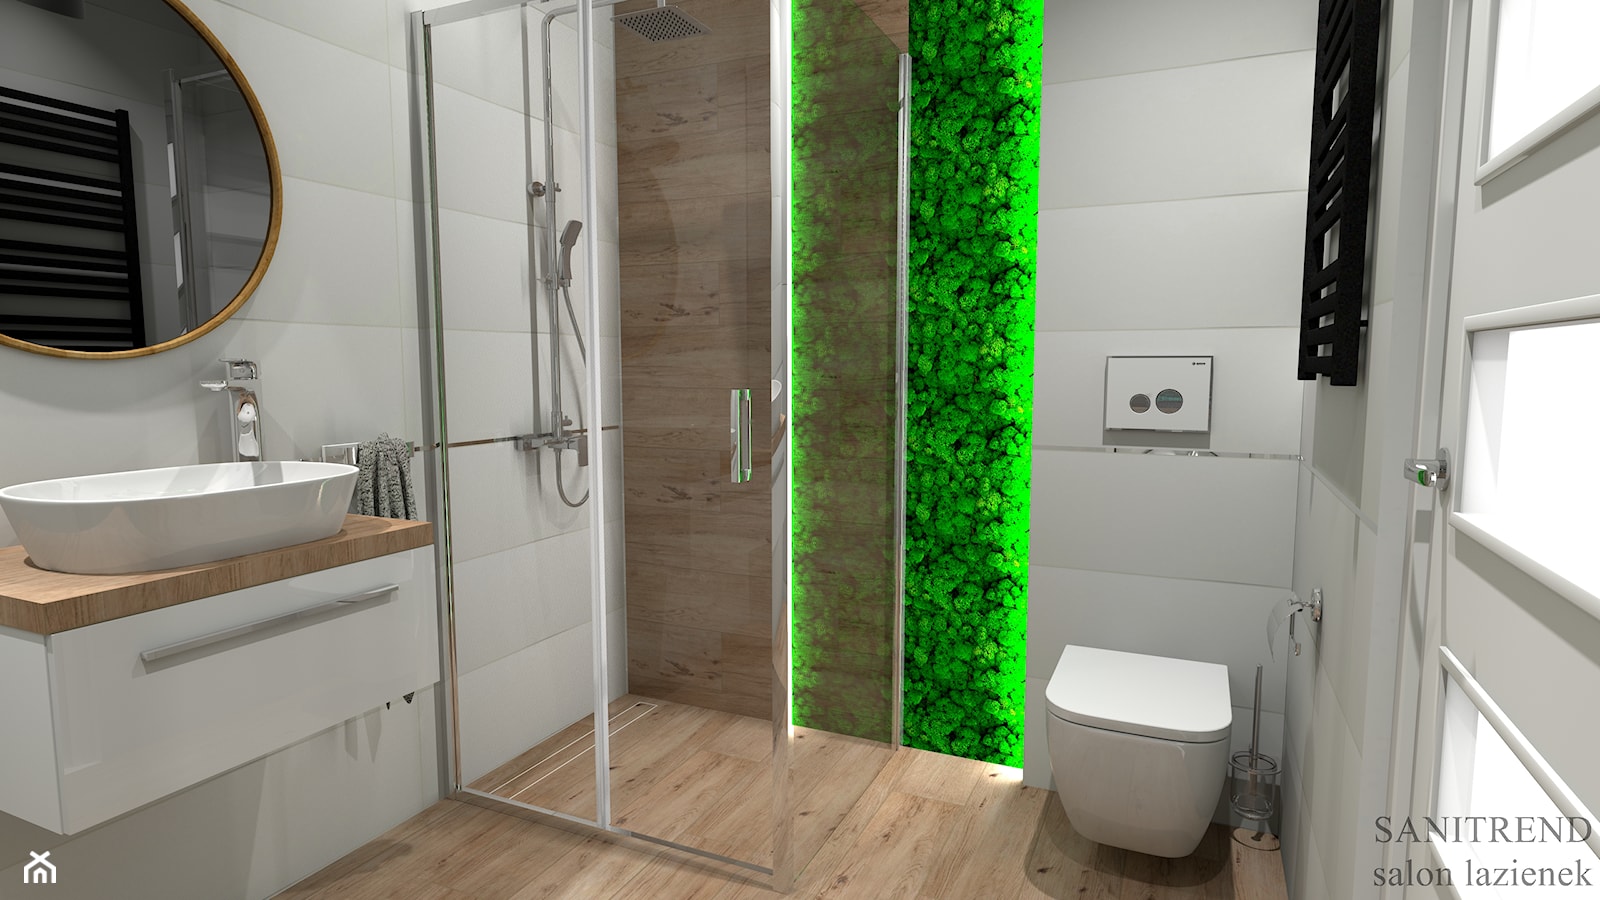 Jasna nowoczesna łazienka z zasosowaniem mchu dekoracyjnego - zdjęcie od SANITREND Salon Łazienek - Homebook